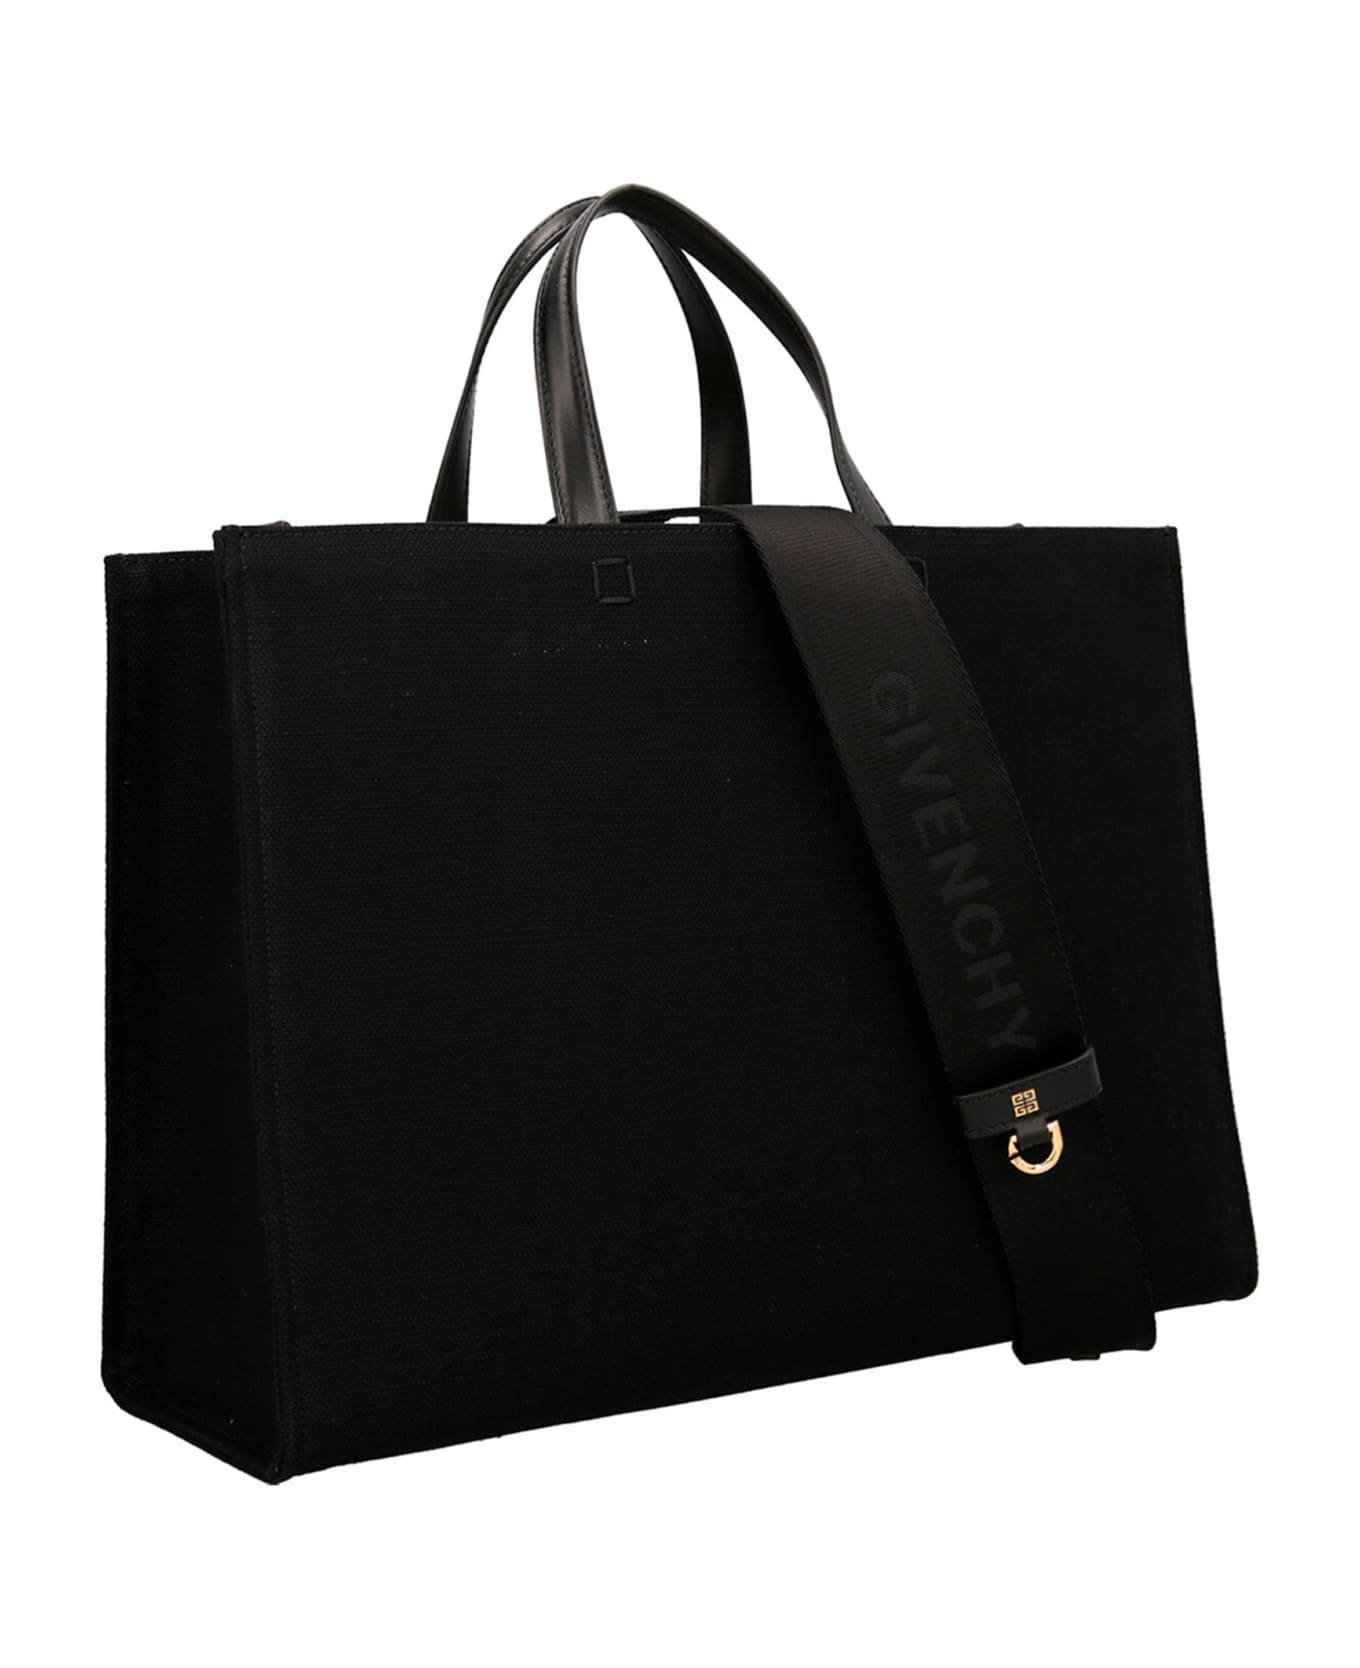 Givenchy G-tote Medium Bag - Black トートバッグ